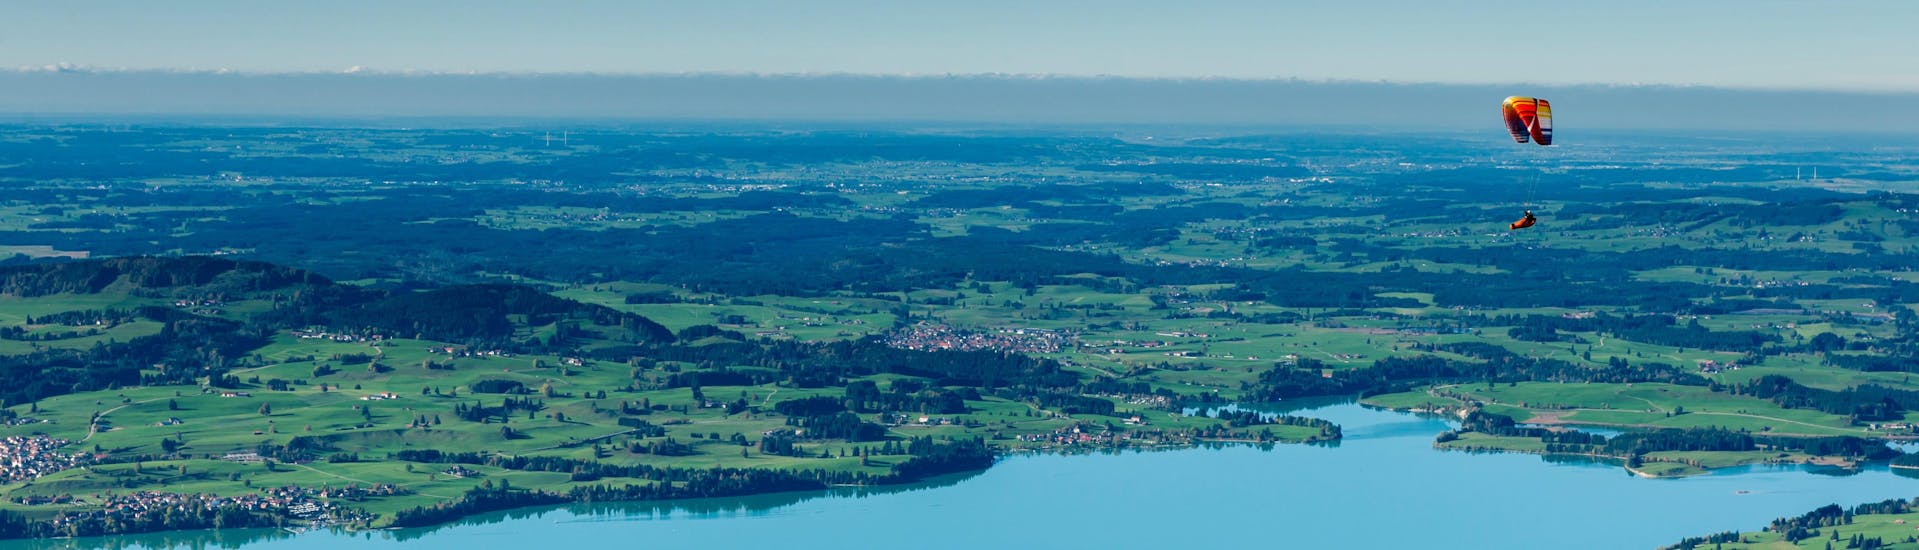 Schwangau - Tegelberg: Een tandemvlucht vindt plaats in een van de hotspots voor paragliding.